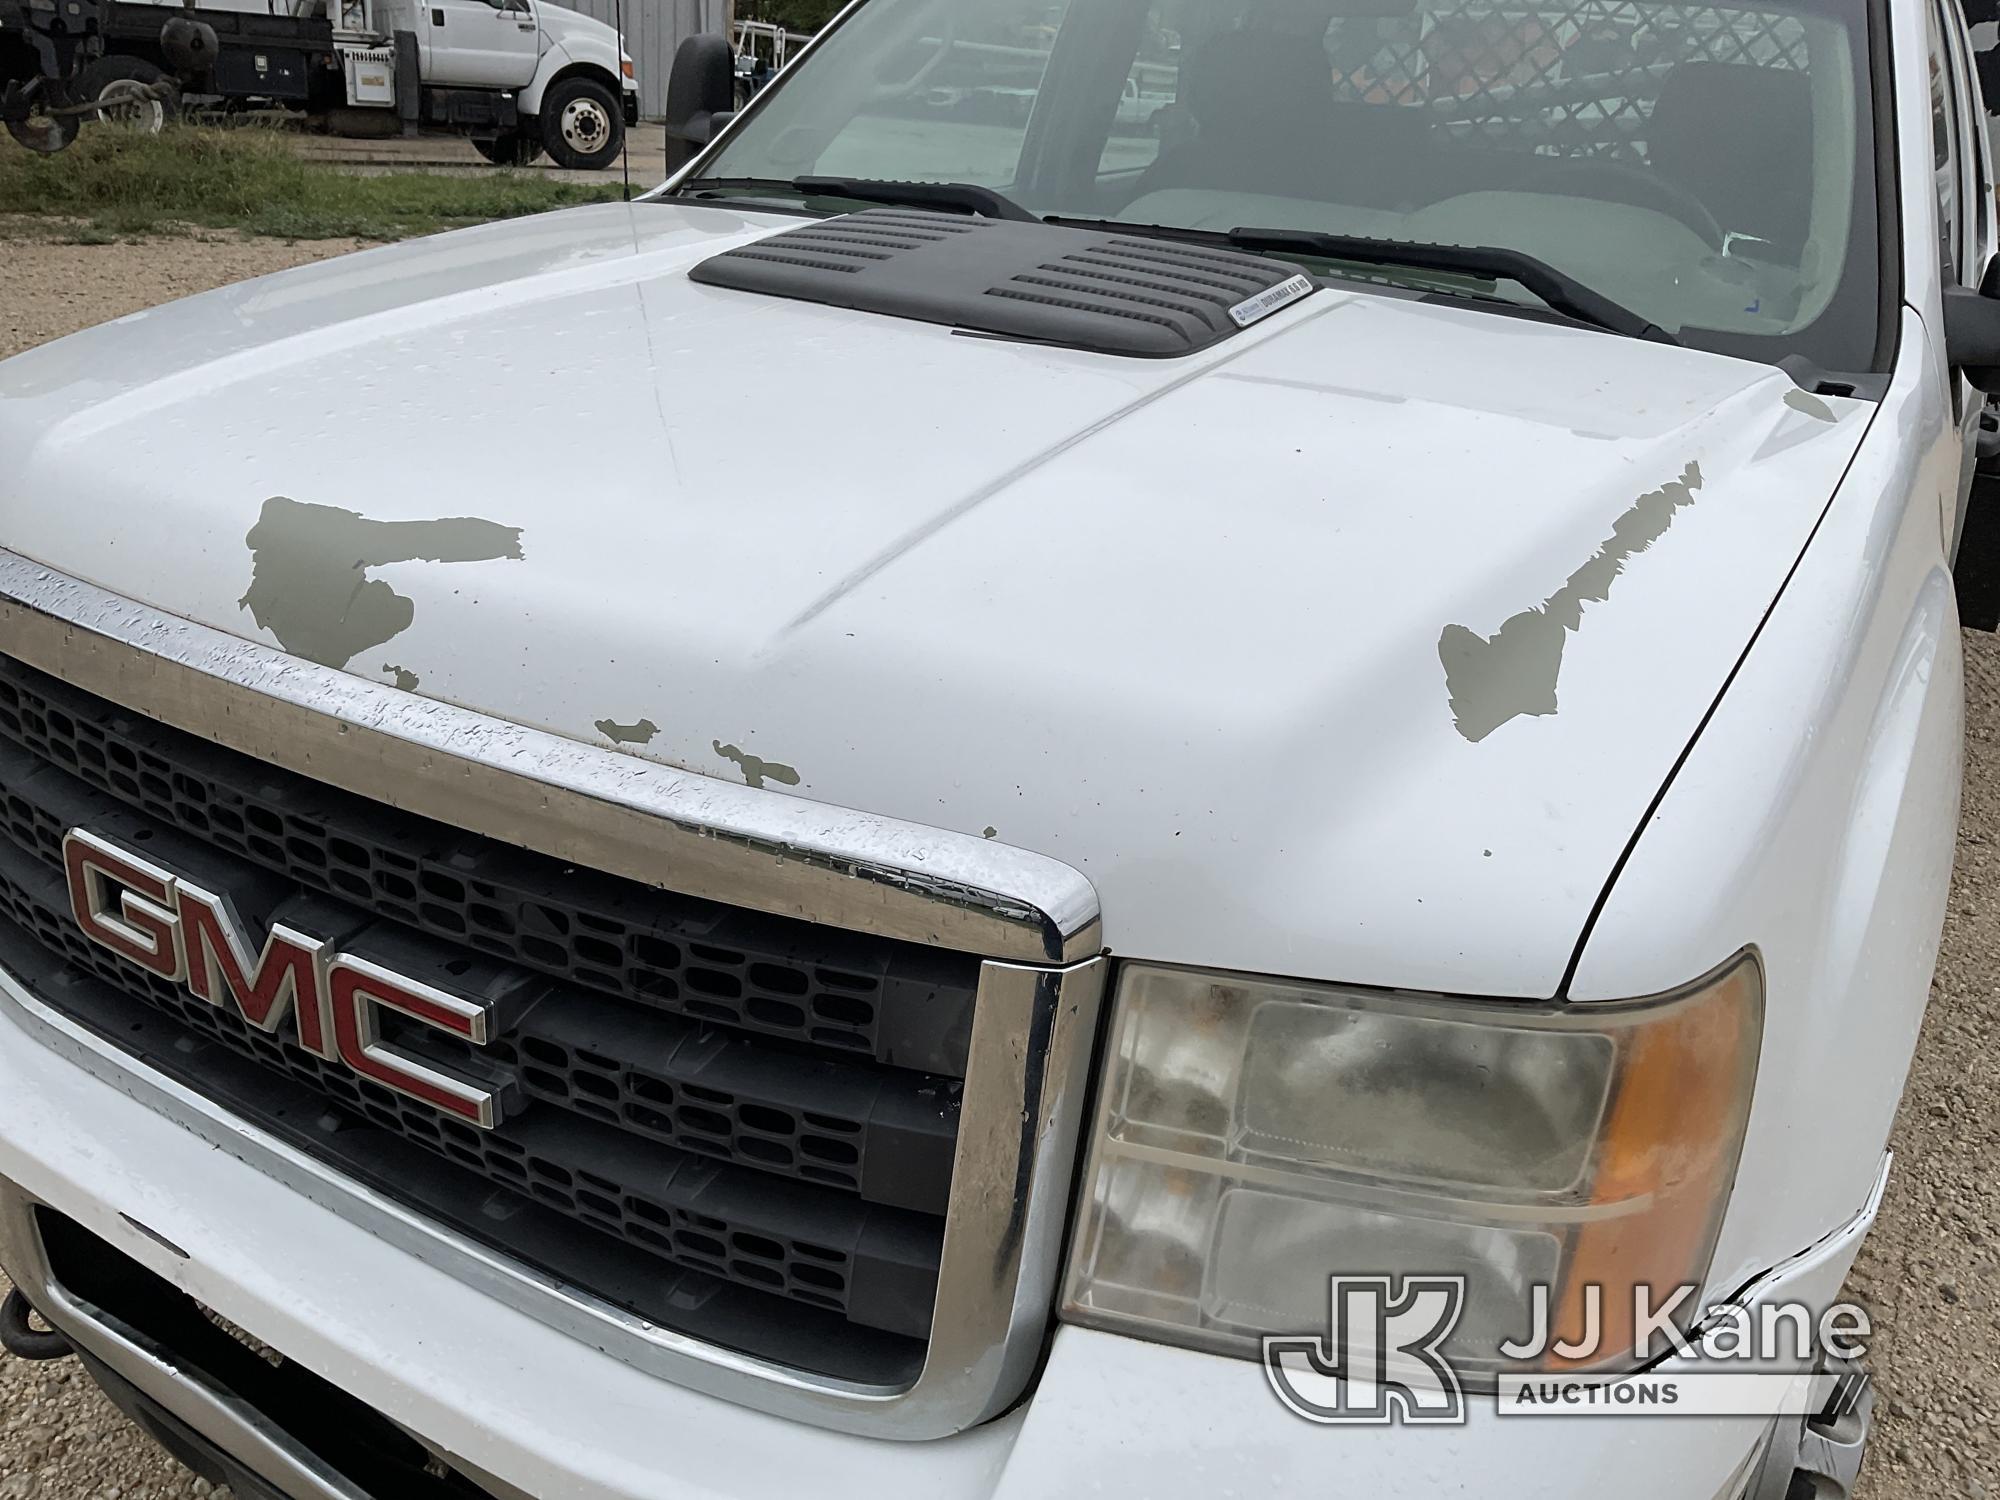 (San Antonio, TX) 2014 Chevrolet Silverado 3500HD Crew-Cab Flatbed Truck Runs & Moves) (Dash Reading